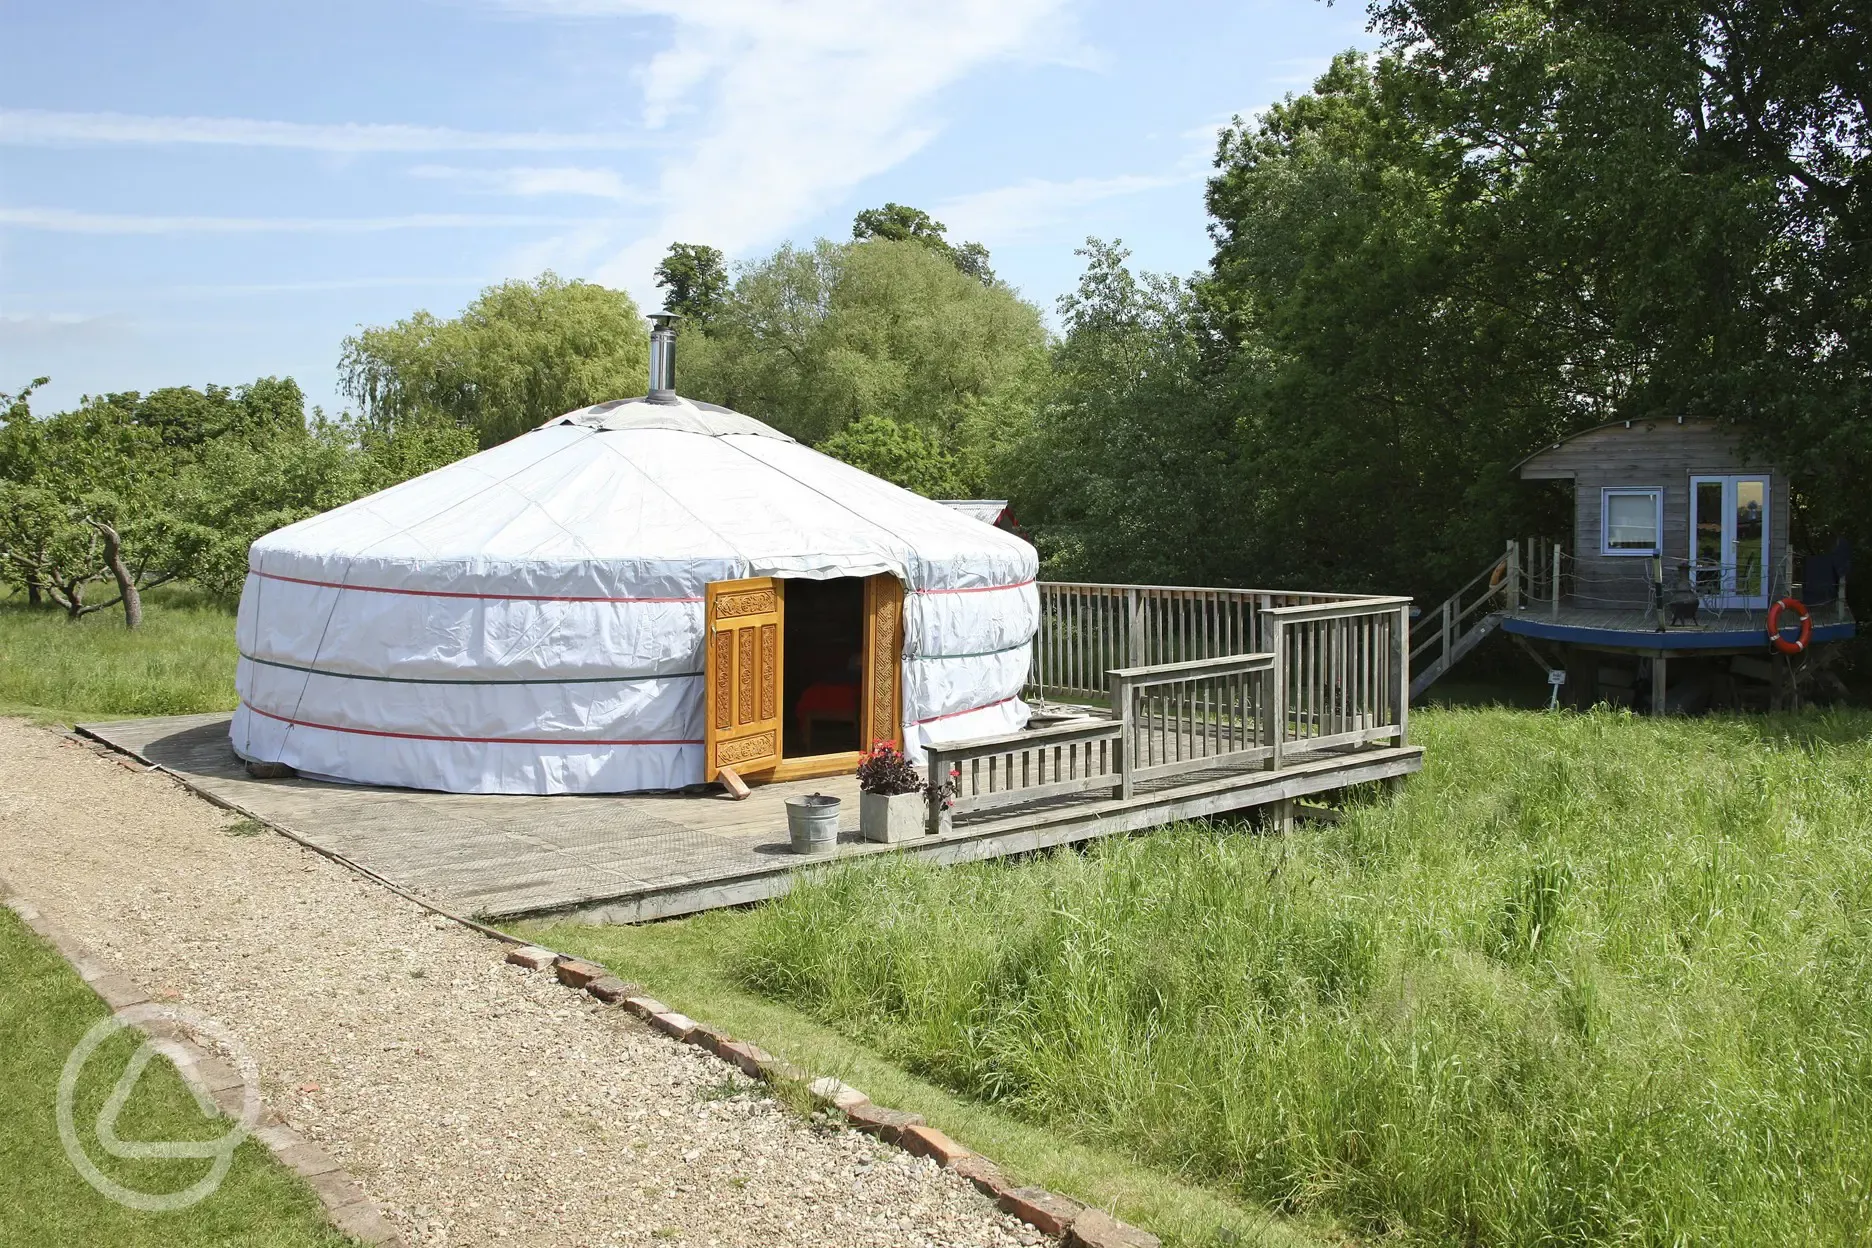 Large yurt